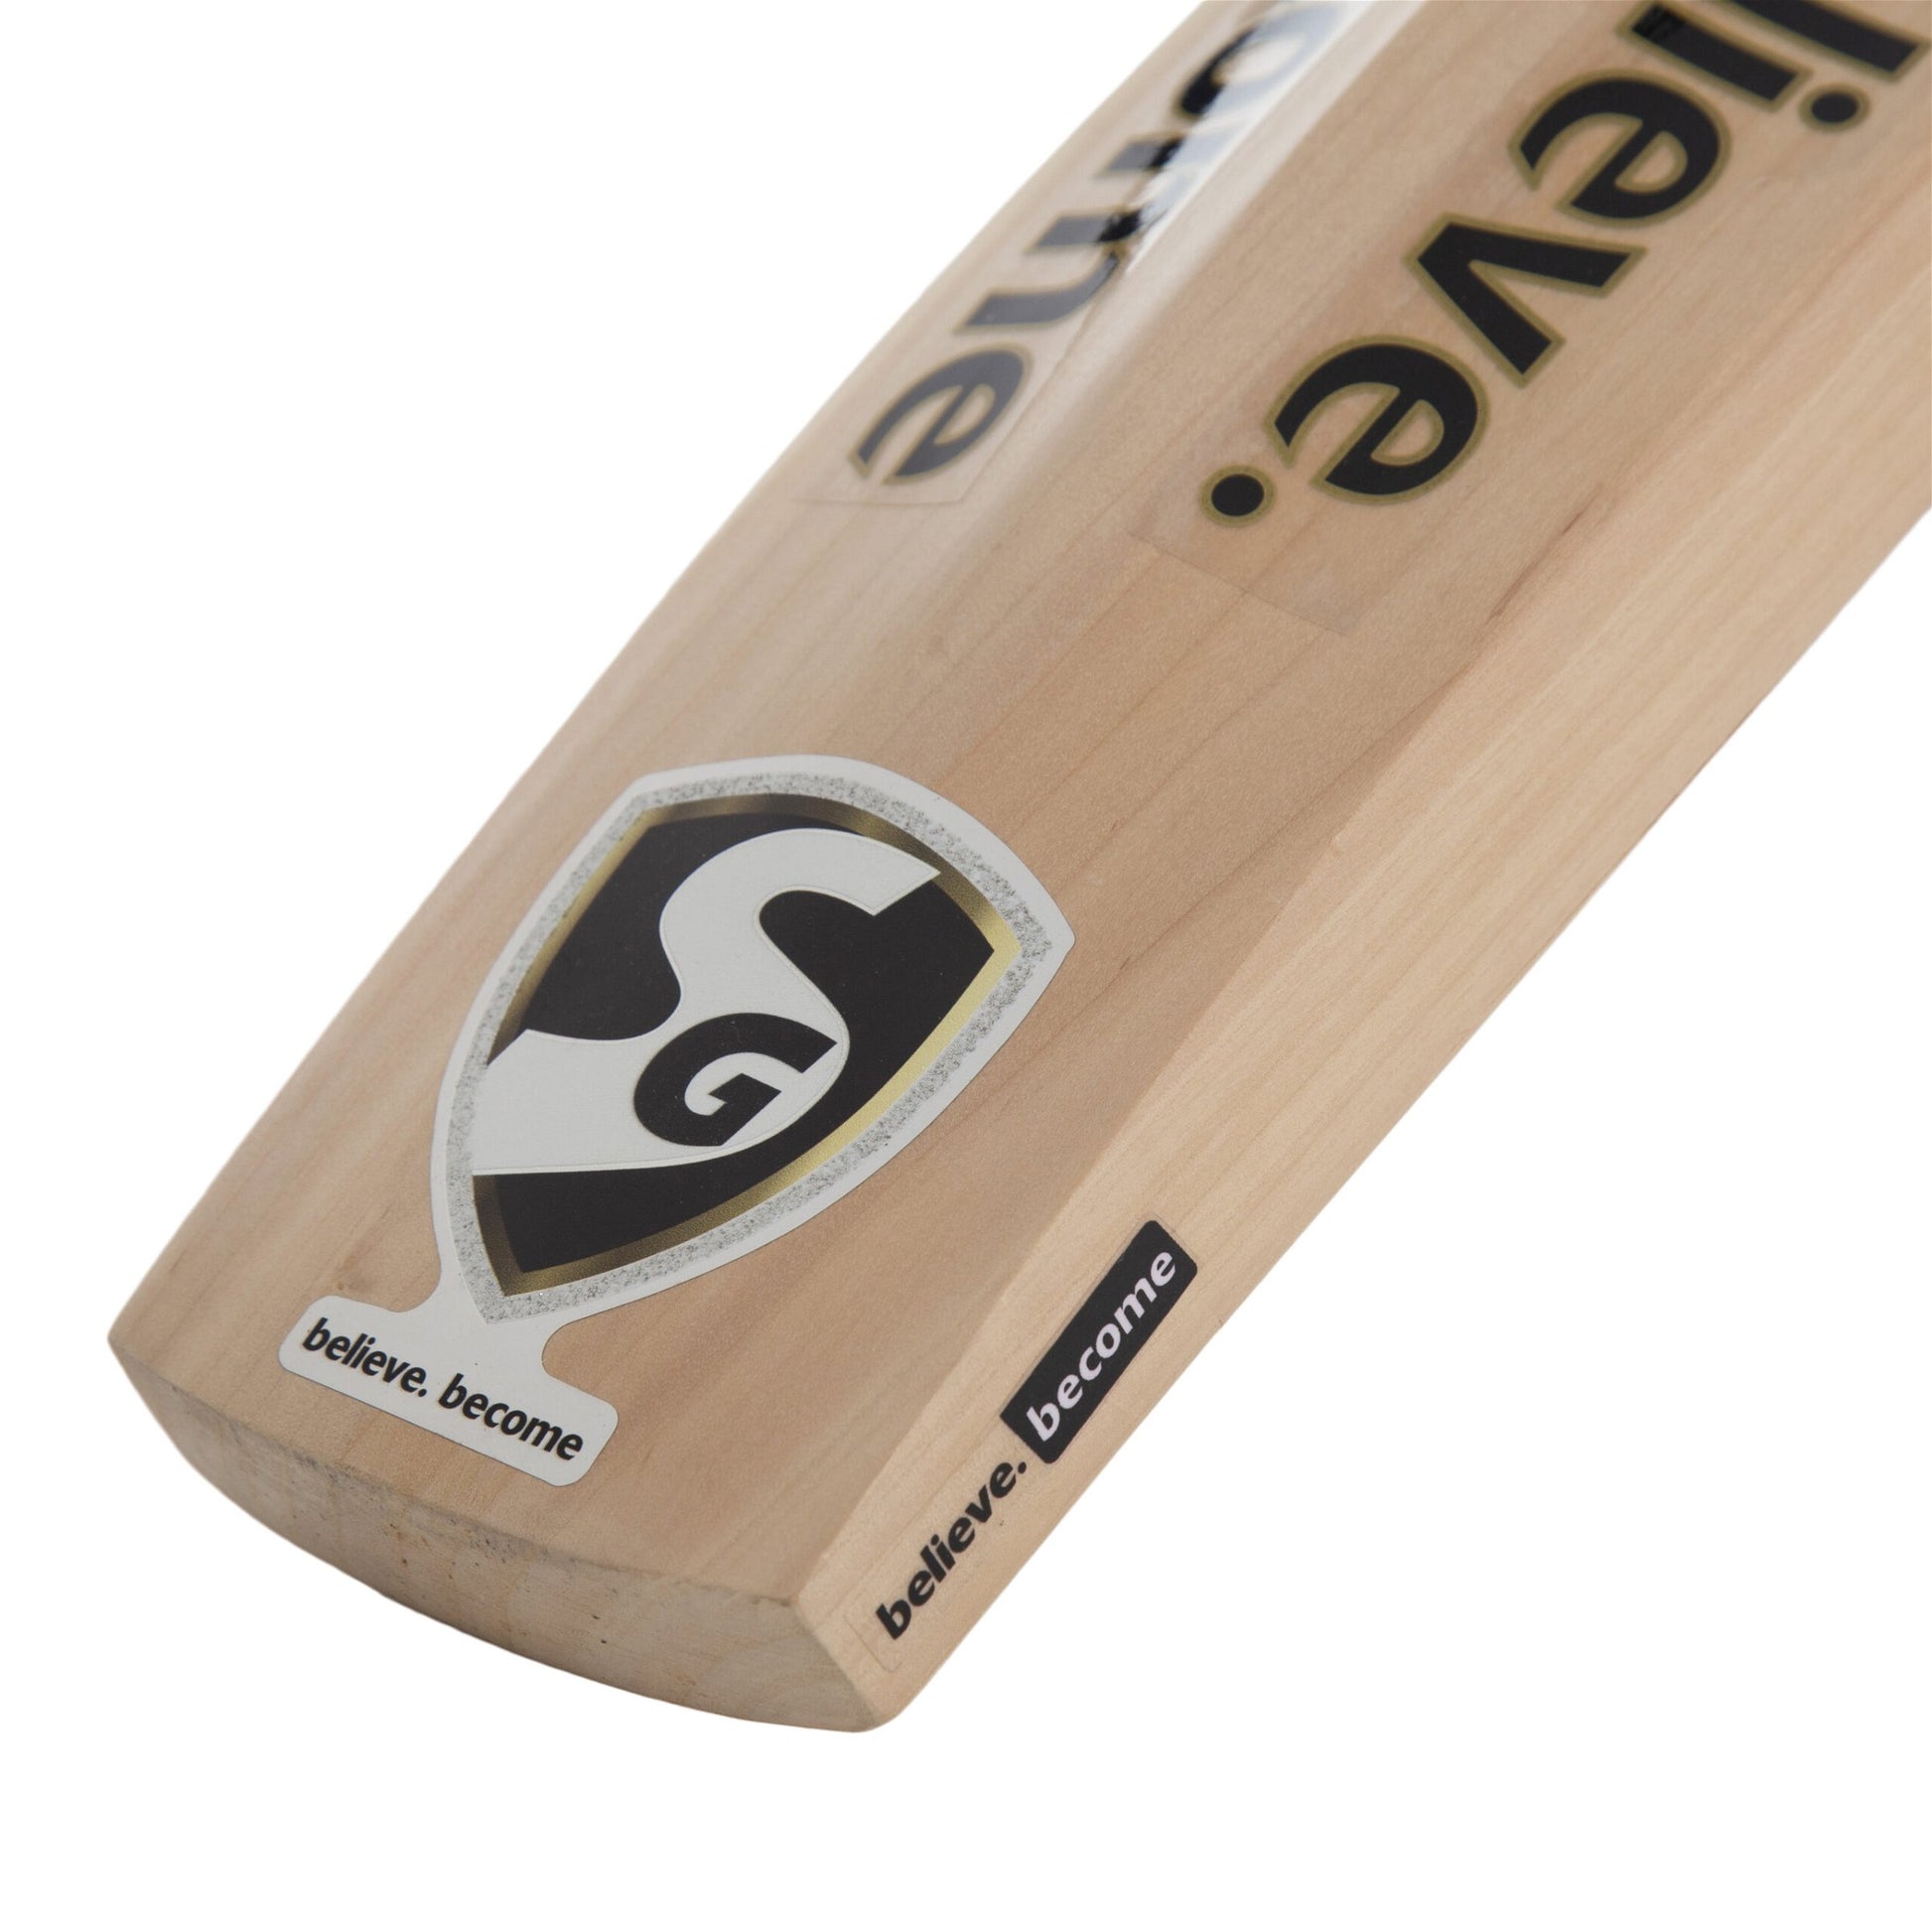 SG HP SPARK Kashmir Willow Cricket Bat